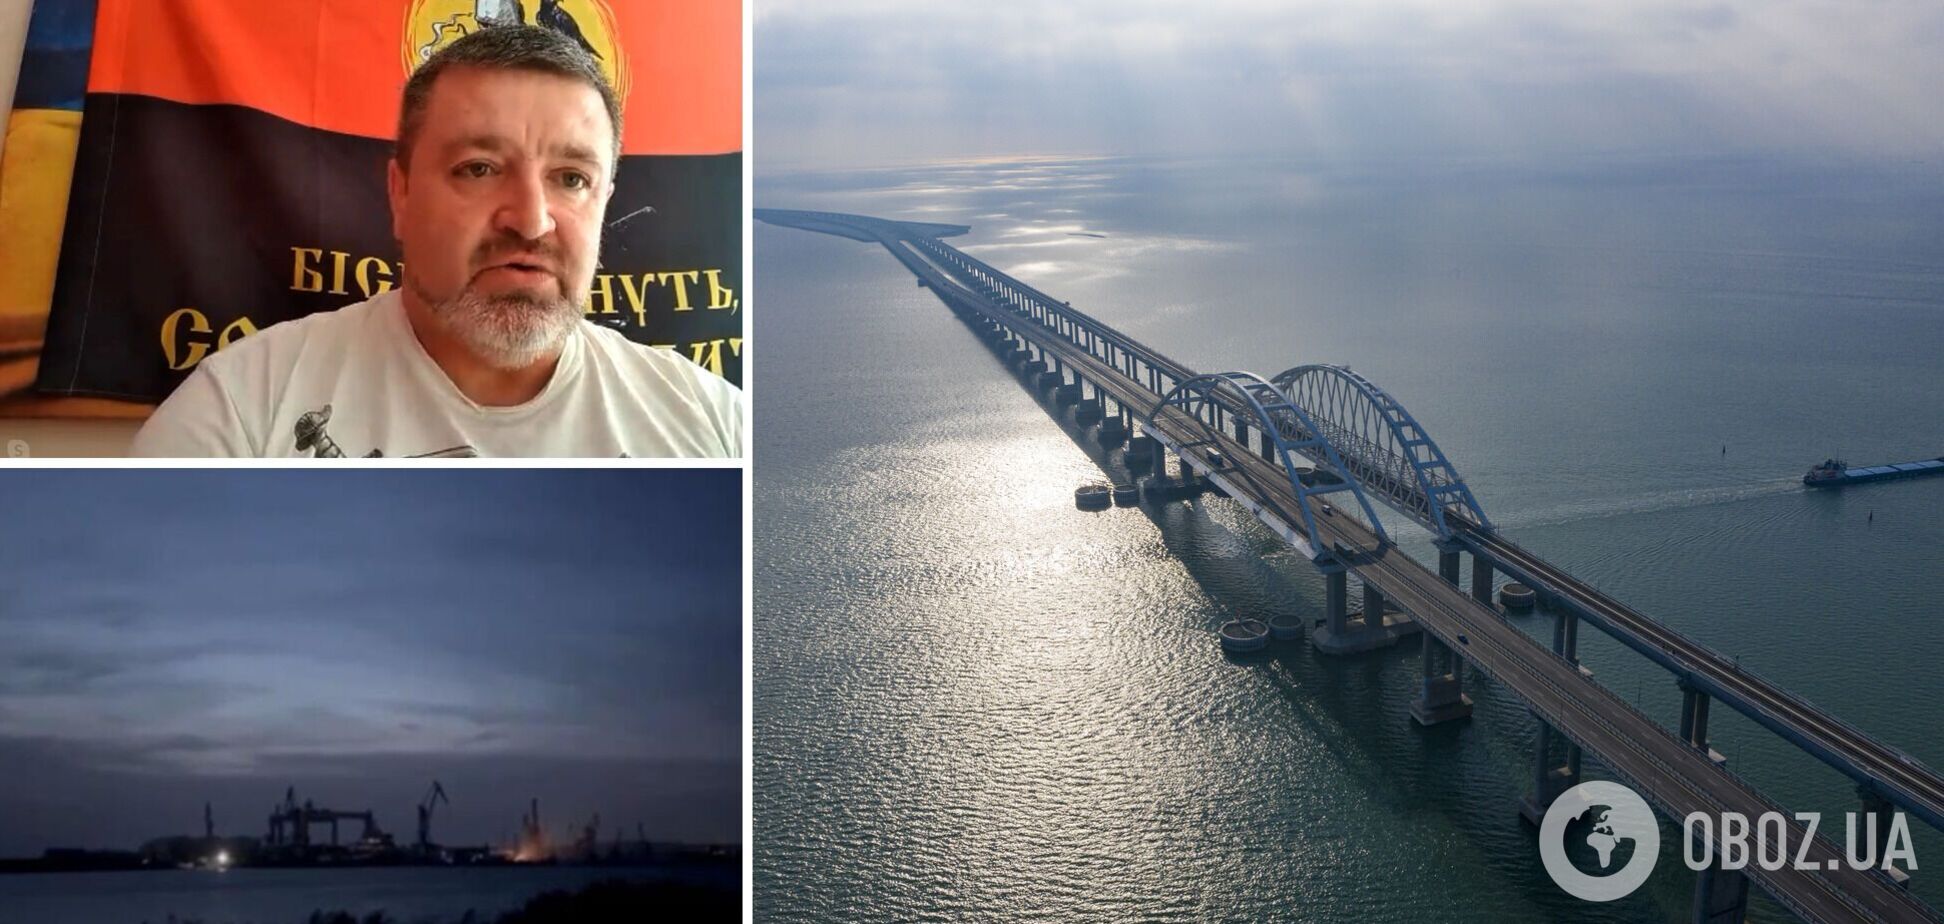 ВСУ подтвердили огневой контроль над территорией Крыма, жизнь моста под угрозой, – Братчук